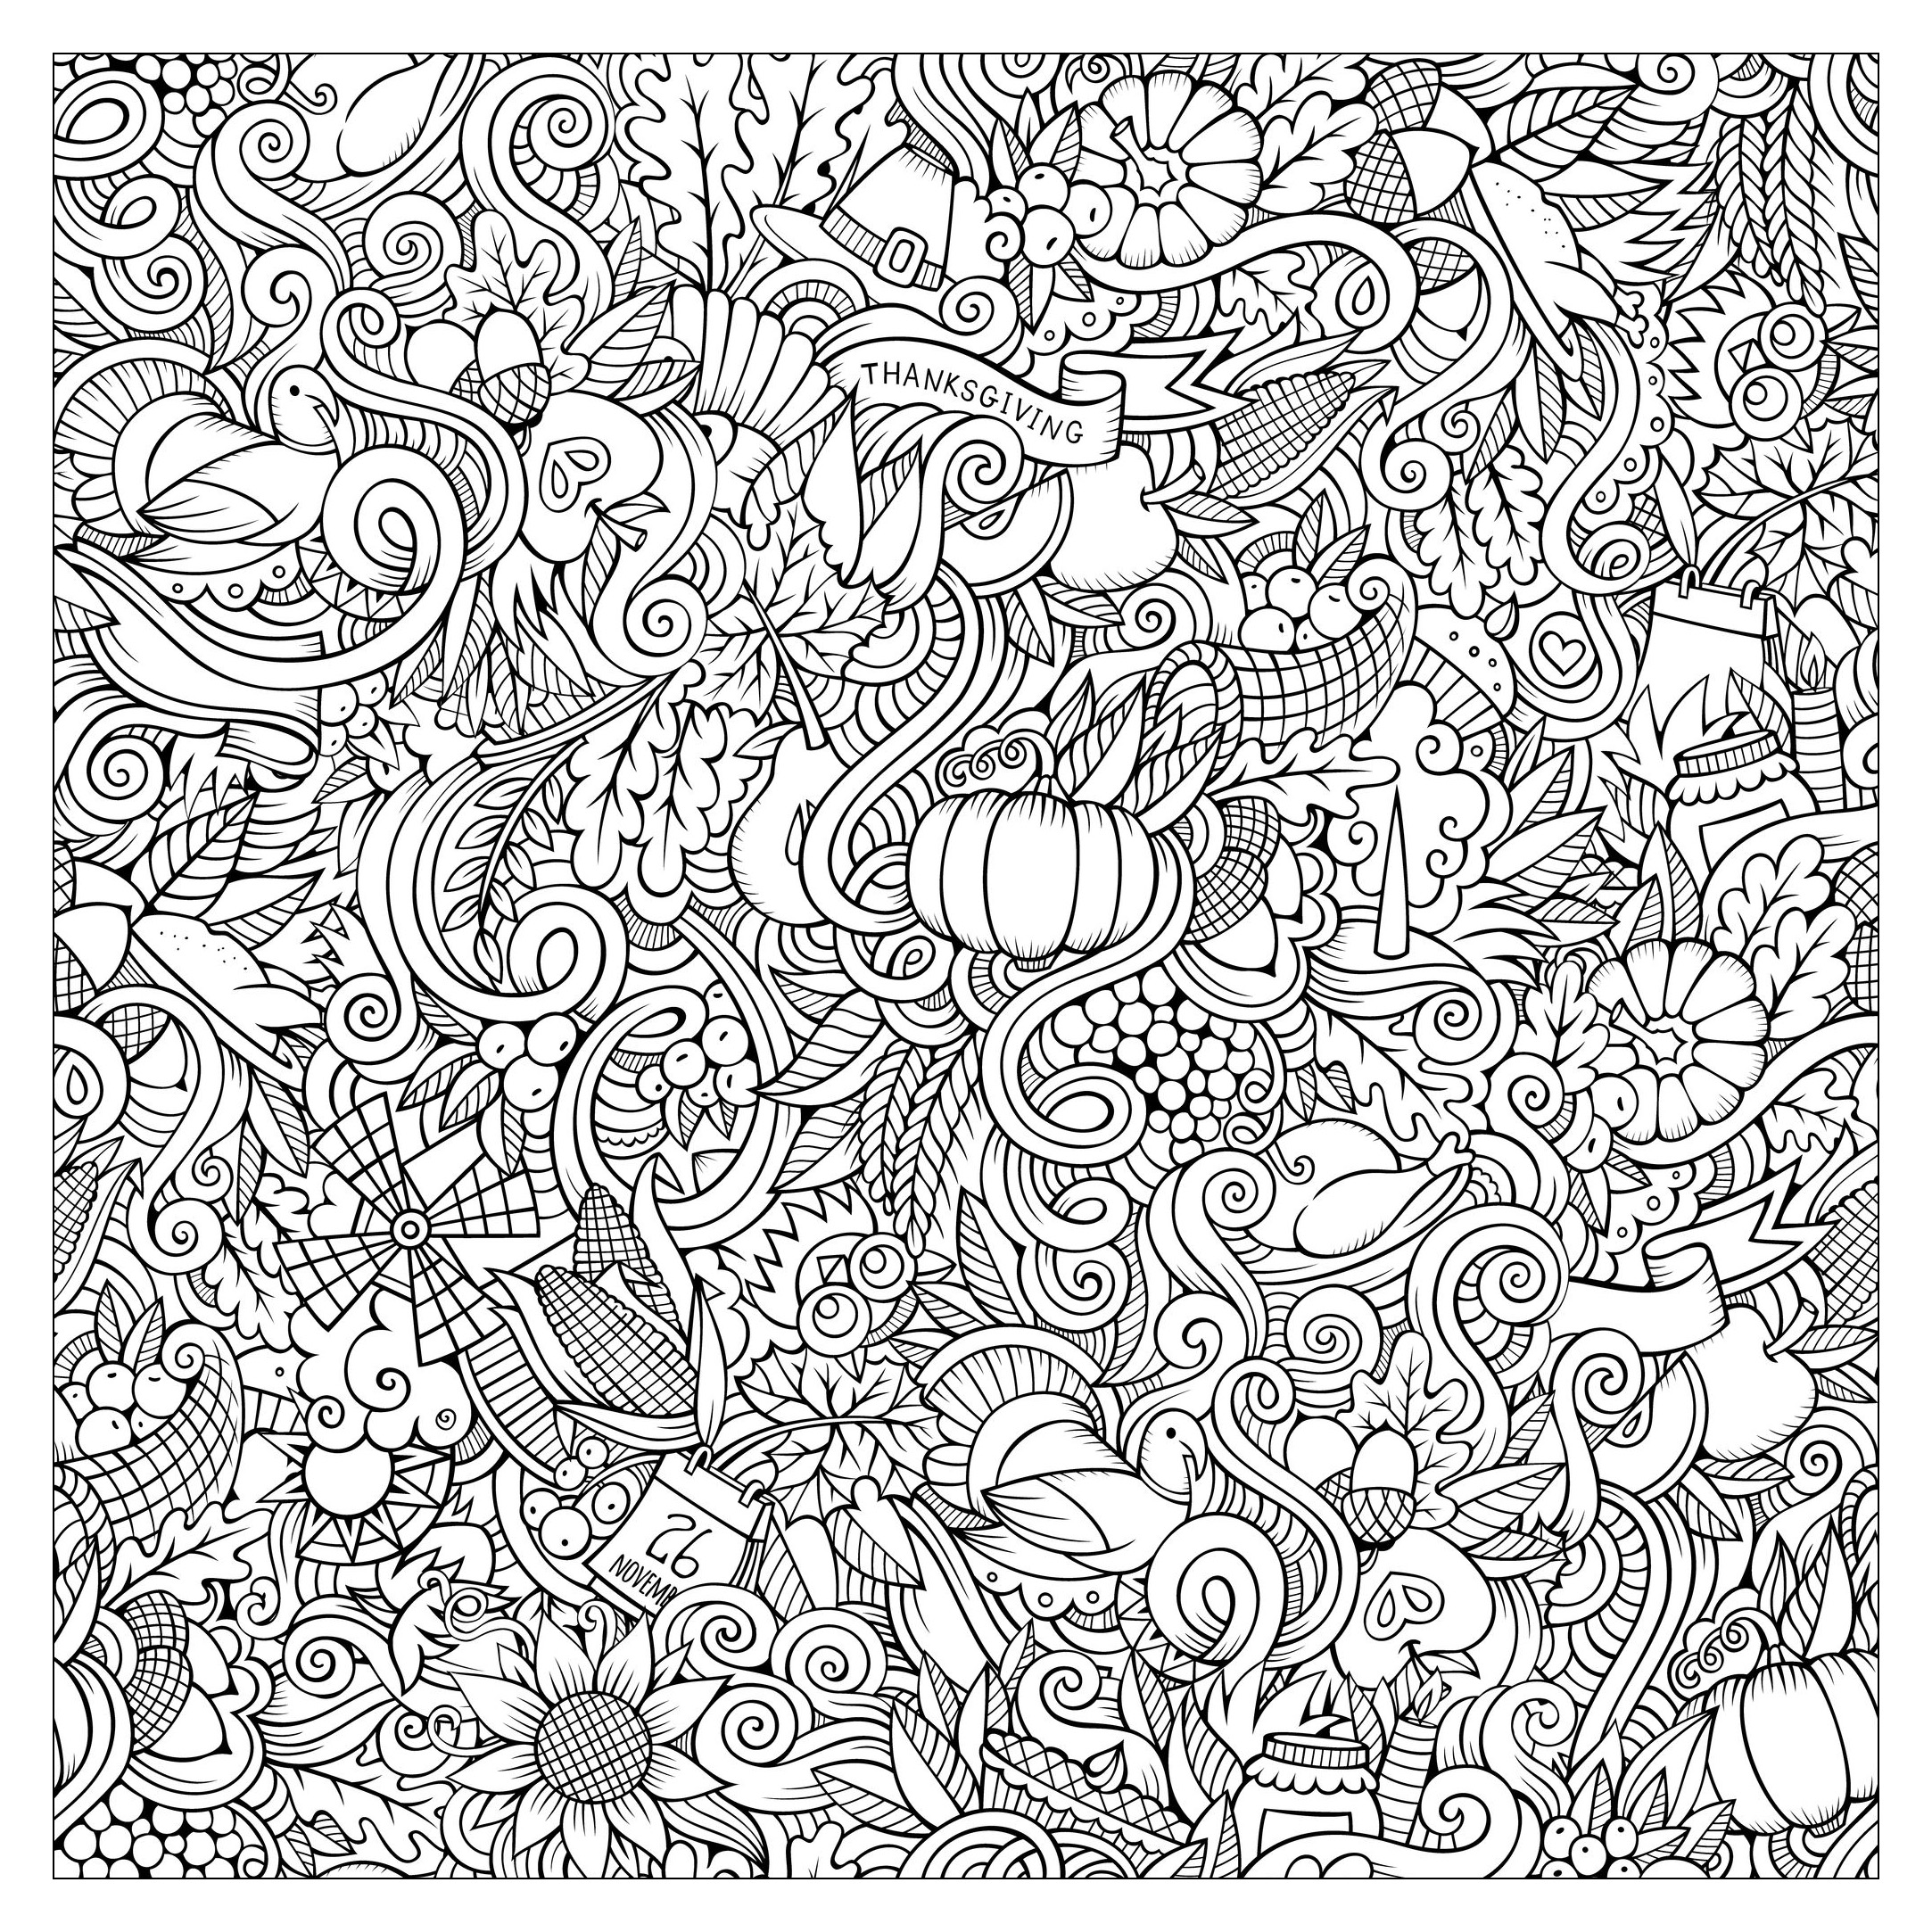 Scarabocchi disegnati a mano da colorare sul tema del ringraziamento e dell'autunno. Simboli, cibo (bacche, mais, zucche...), fiori, tacchini.., Artista : Olga Kostenko   Fonte : 123rf